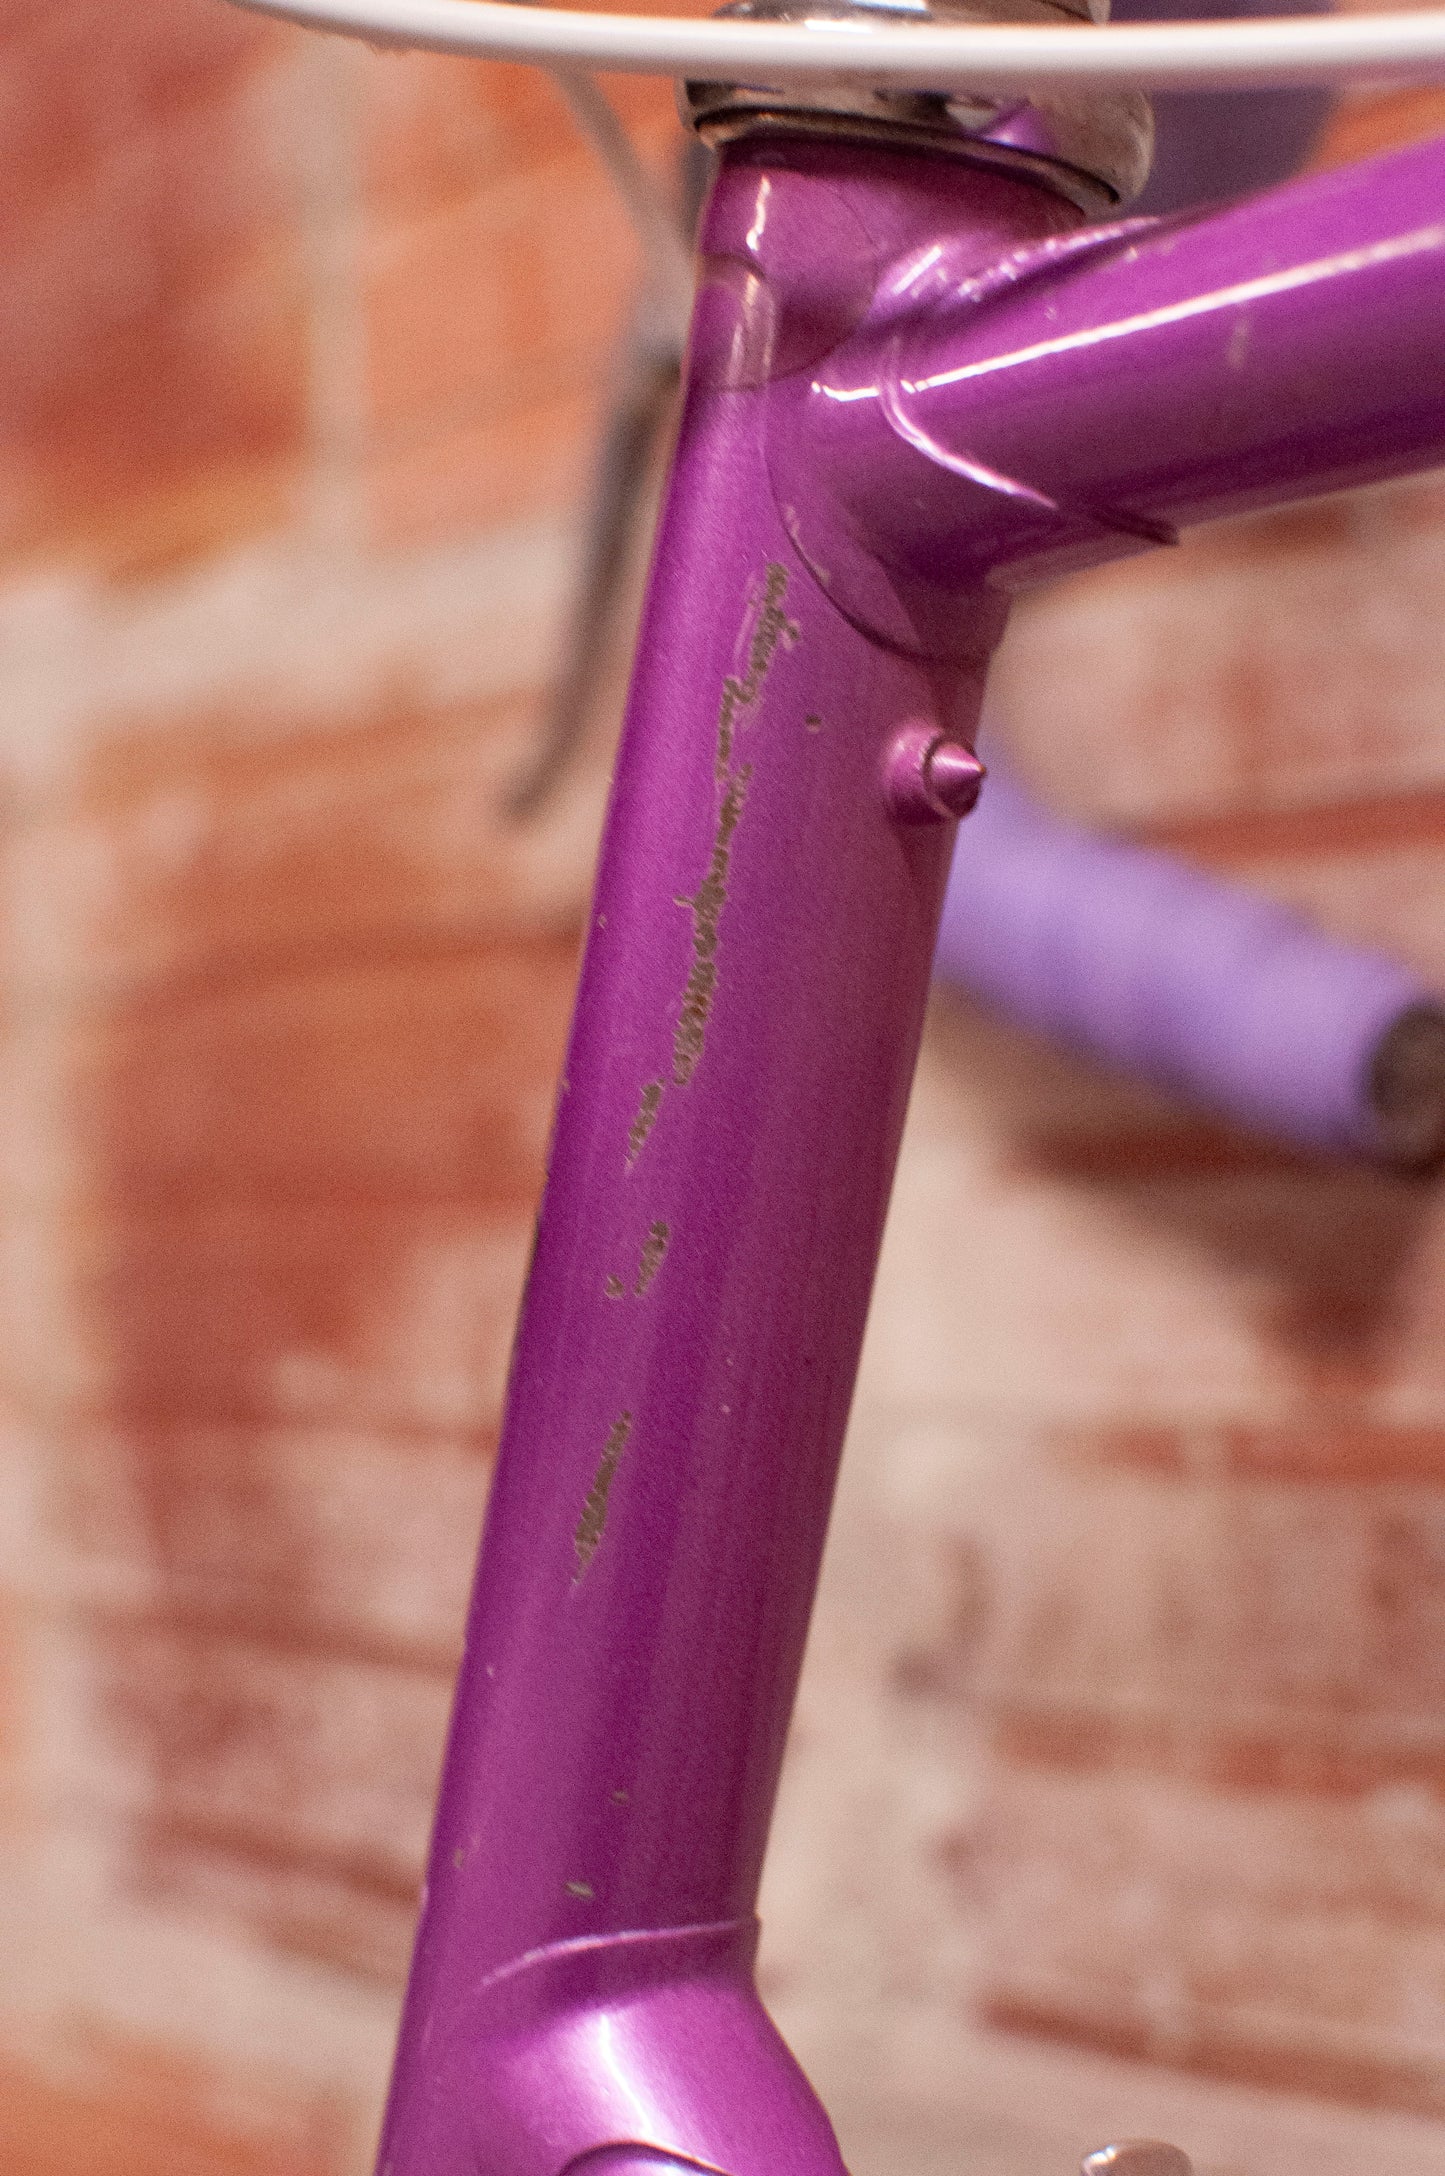 Bianchi Vintage Road Bike - 62 cm frame - purple